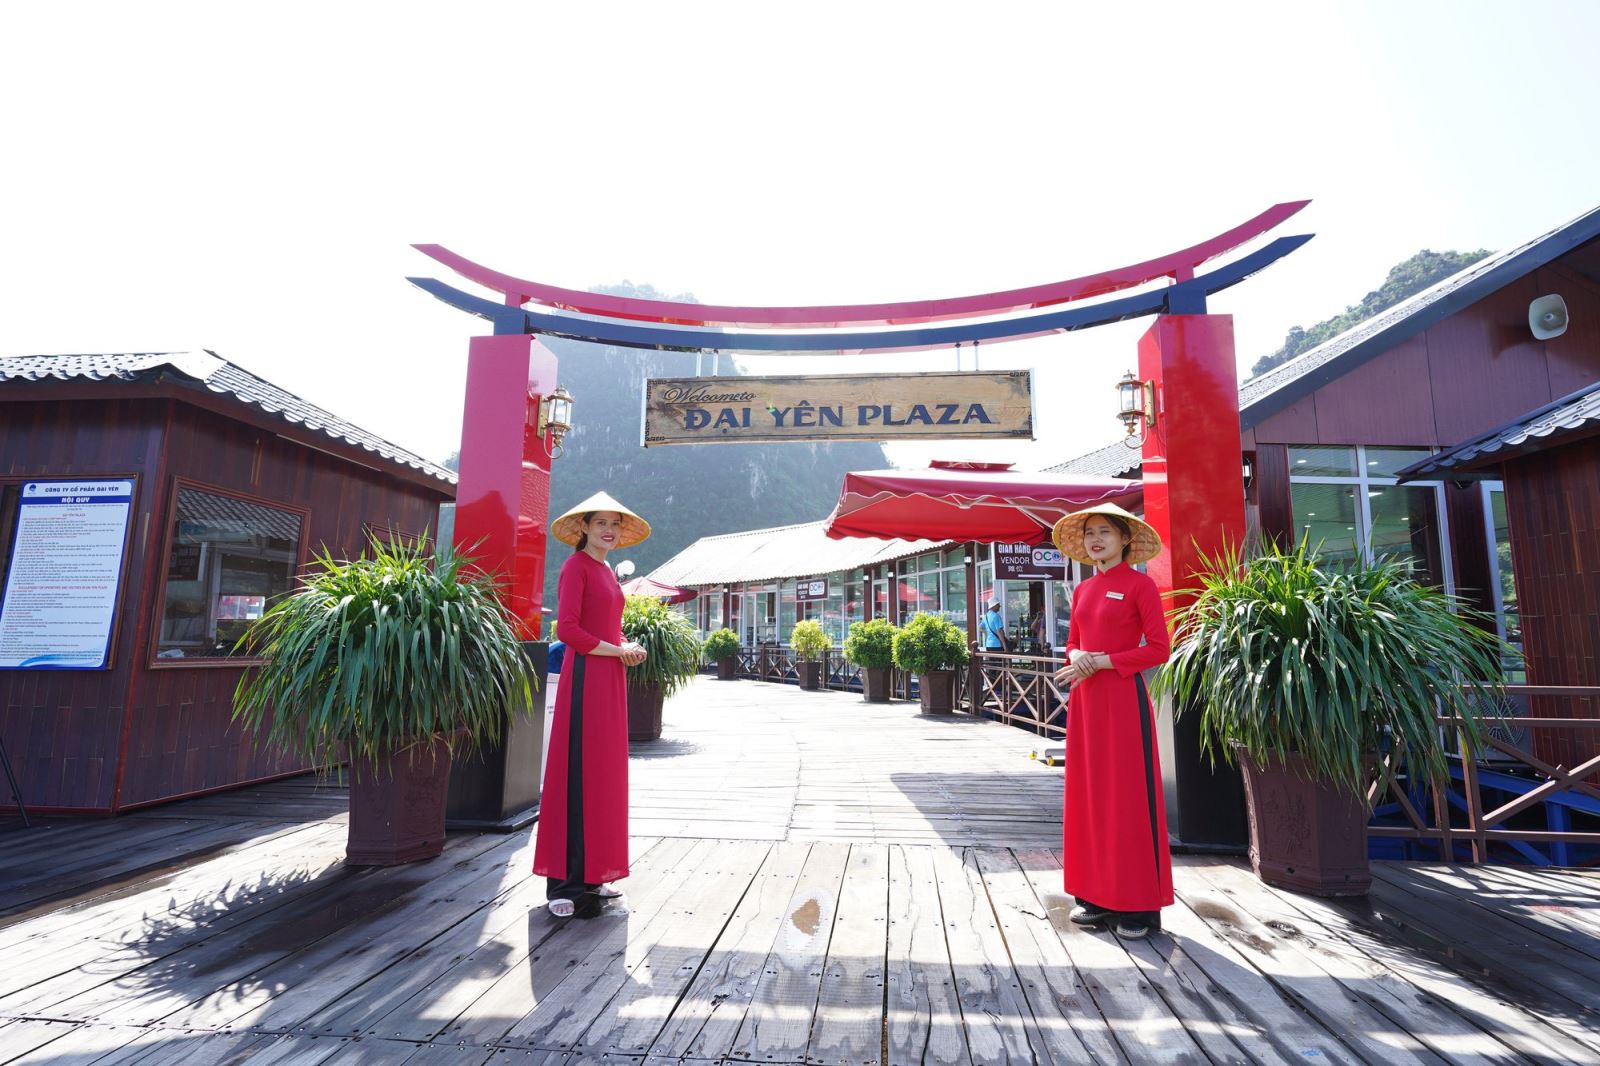  Đại Yên Plaza - điểm du lịch nổi trên vịnh Hạ Long